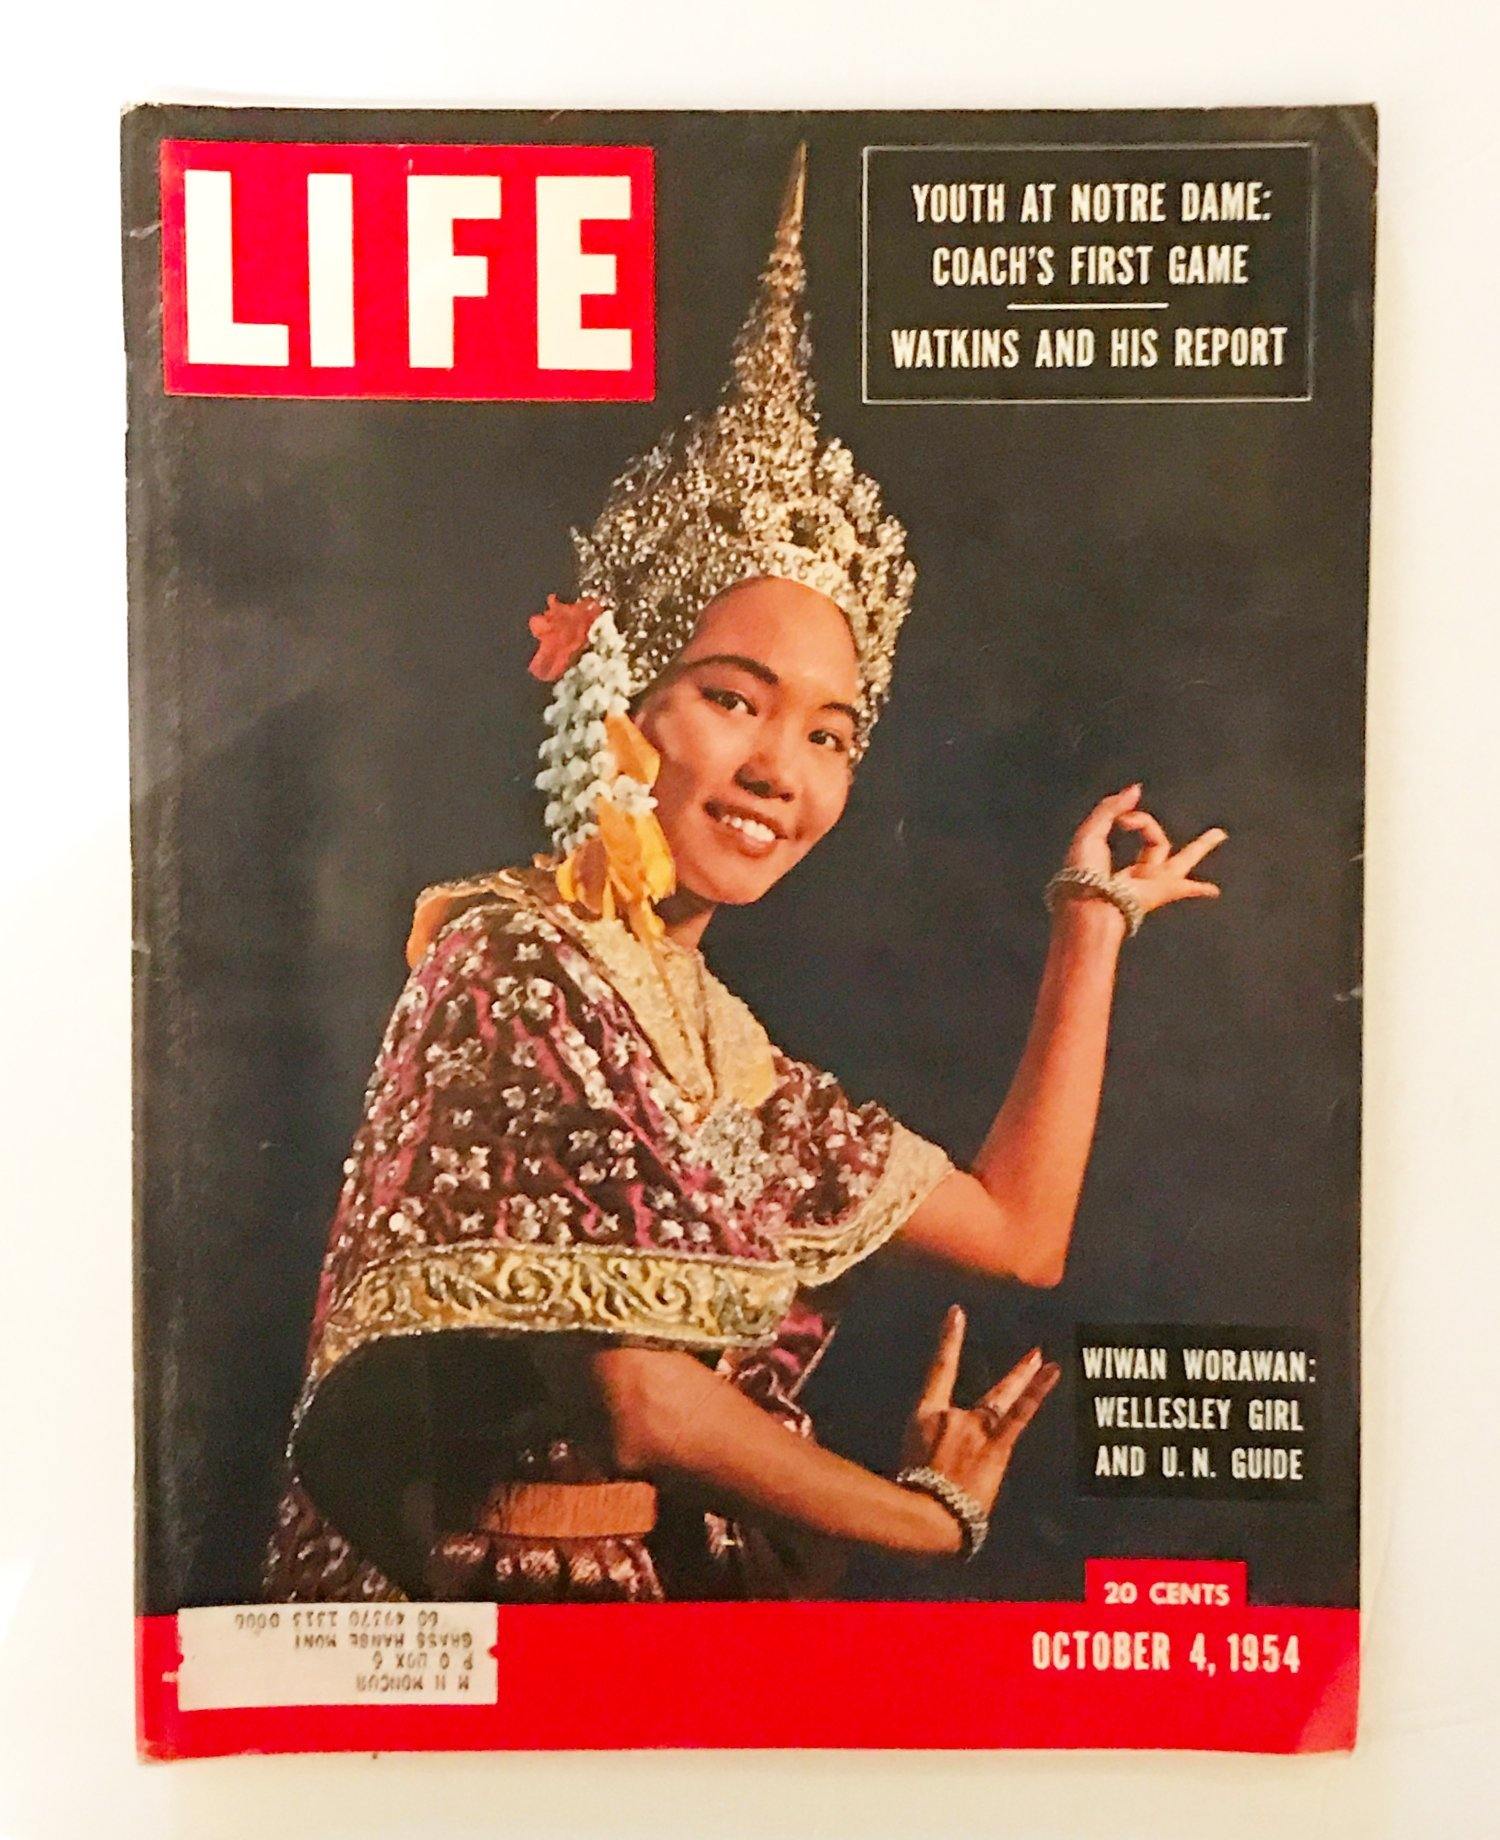 Vintage LIFE Magazine October 4, 1954 - Lamoree’s Vintage